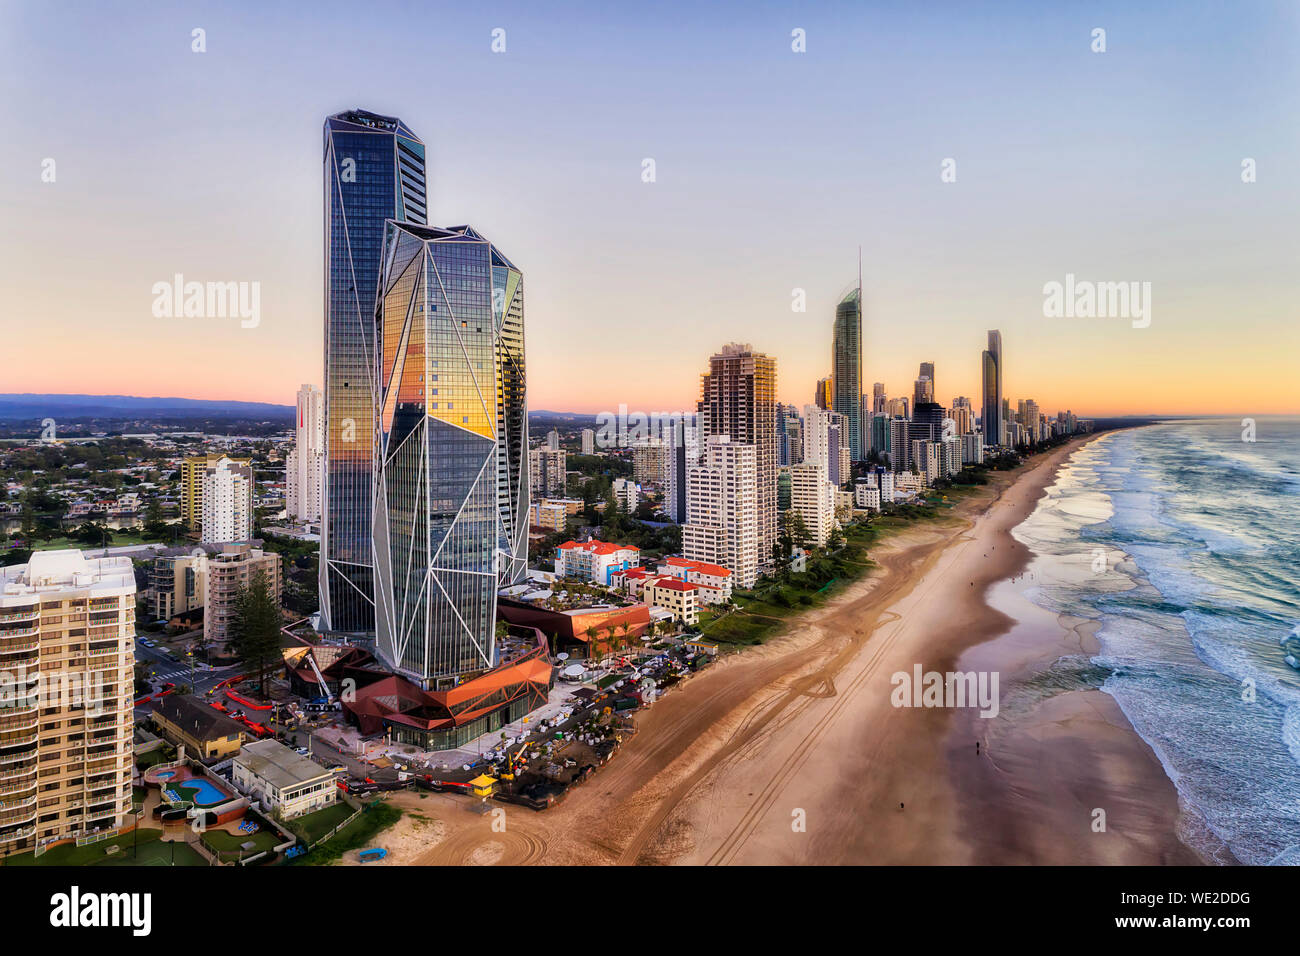 Die Facetten des modernen, urbanen hoch aufragenden Türmen auf australischen Gold Coast - Surfers Paradise in Queensland. Breiten sandigen Strand von Pacific Shore A Stockfoto